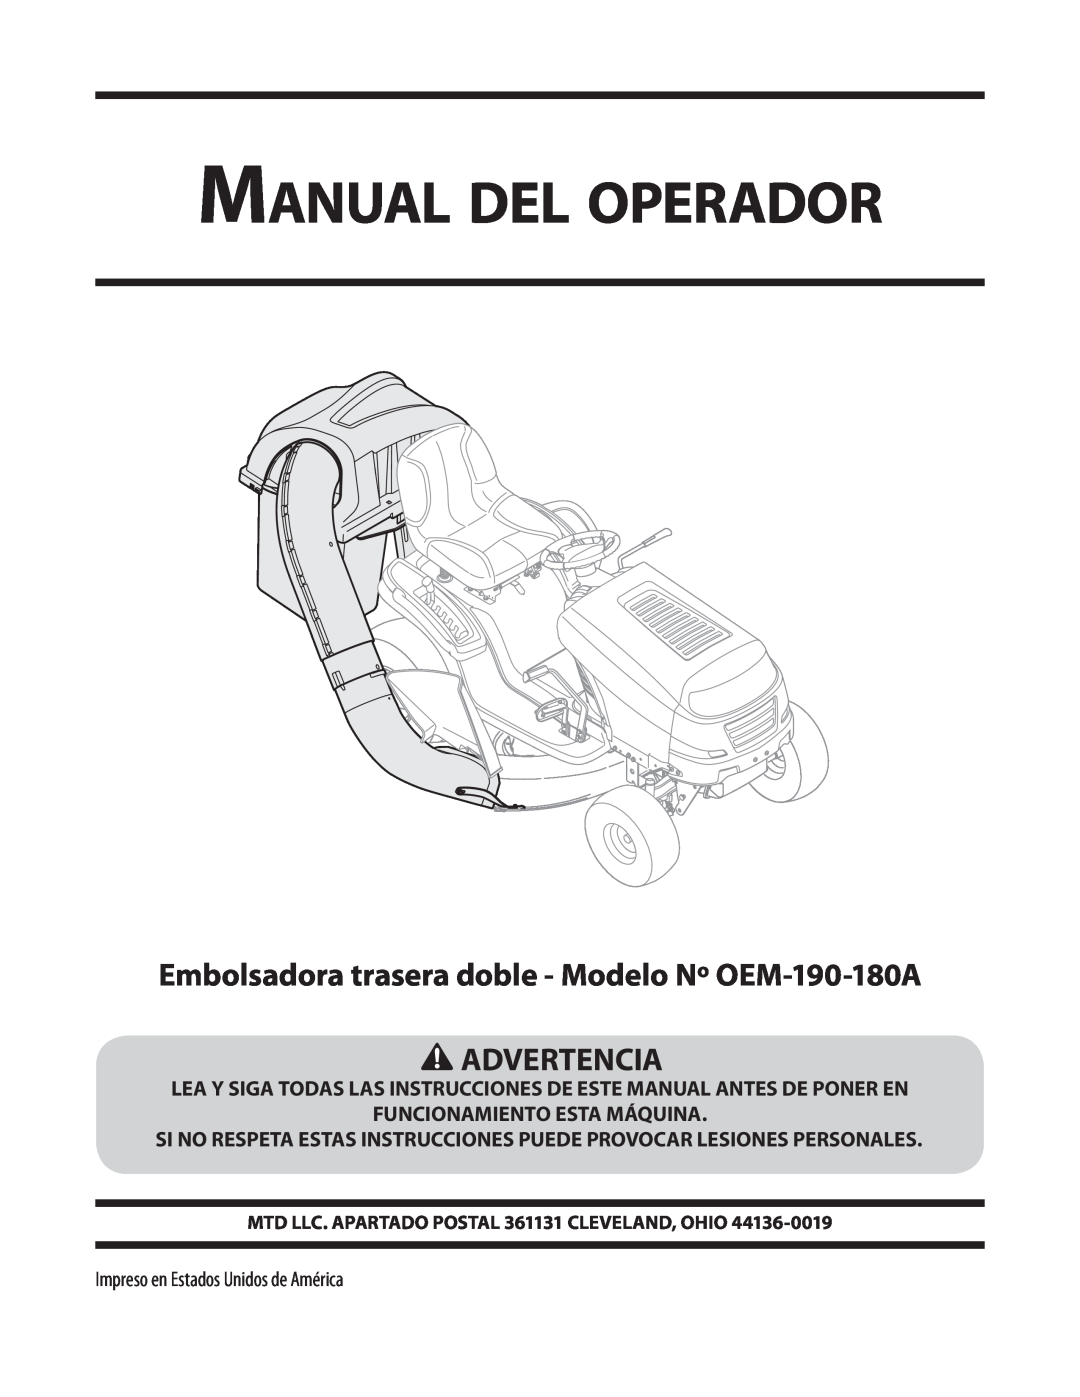 MTD Manual del operador, Embolsadora trasera doble - Modelo Nº OEM-190-180A ADVERTENCIA, Funcionamiento Esta Máquina 